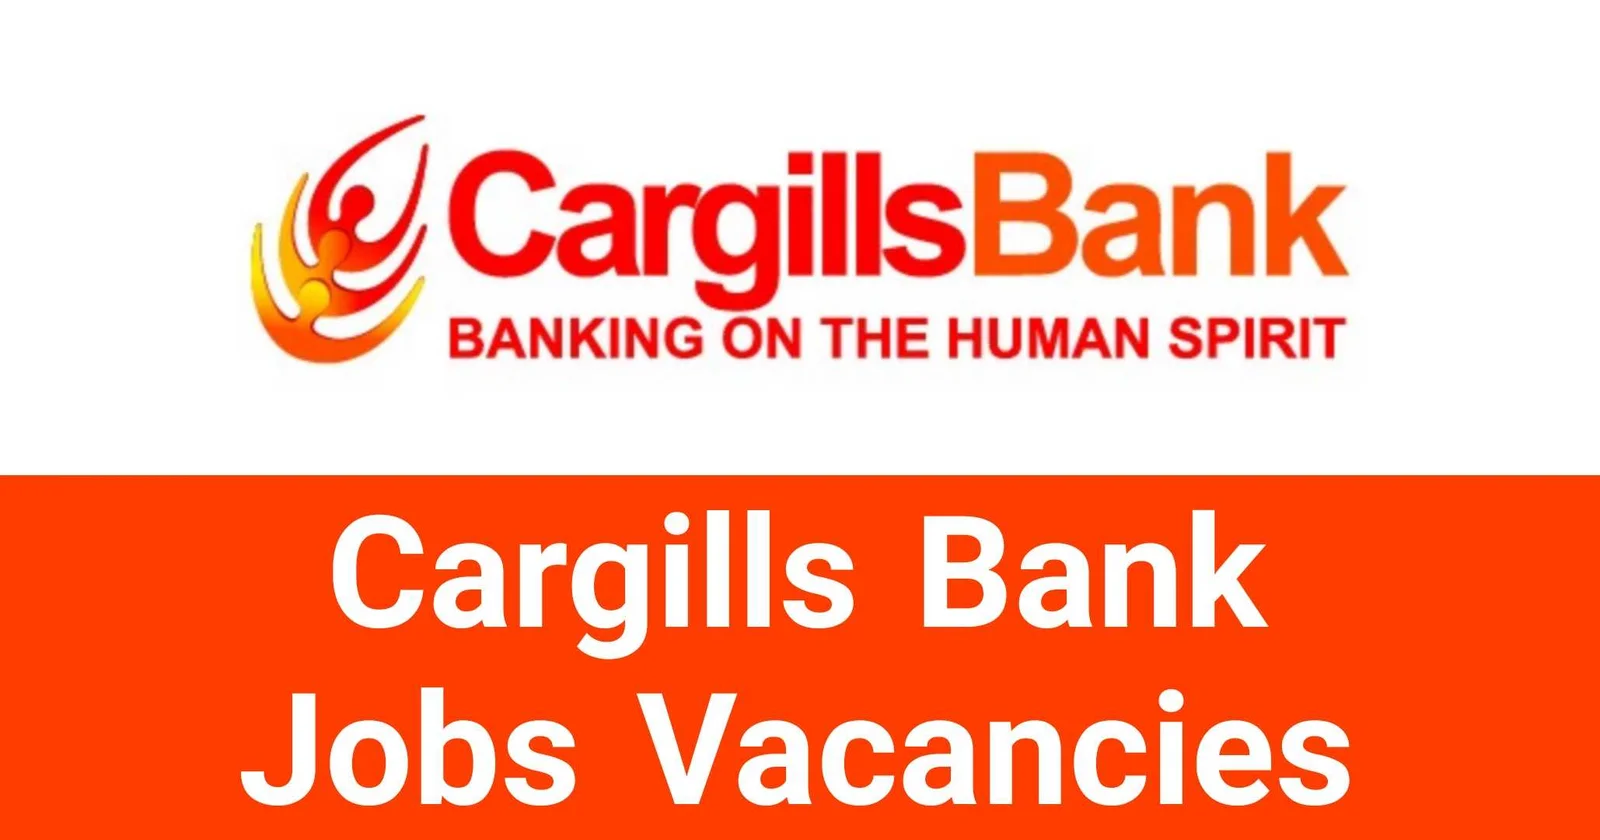 Cargills Bank Limited Jobs Vacancies Recruitments Applications